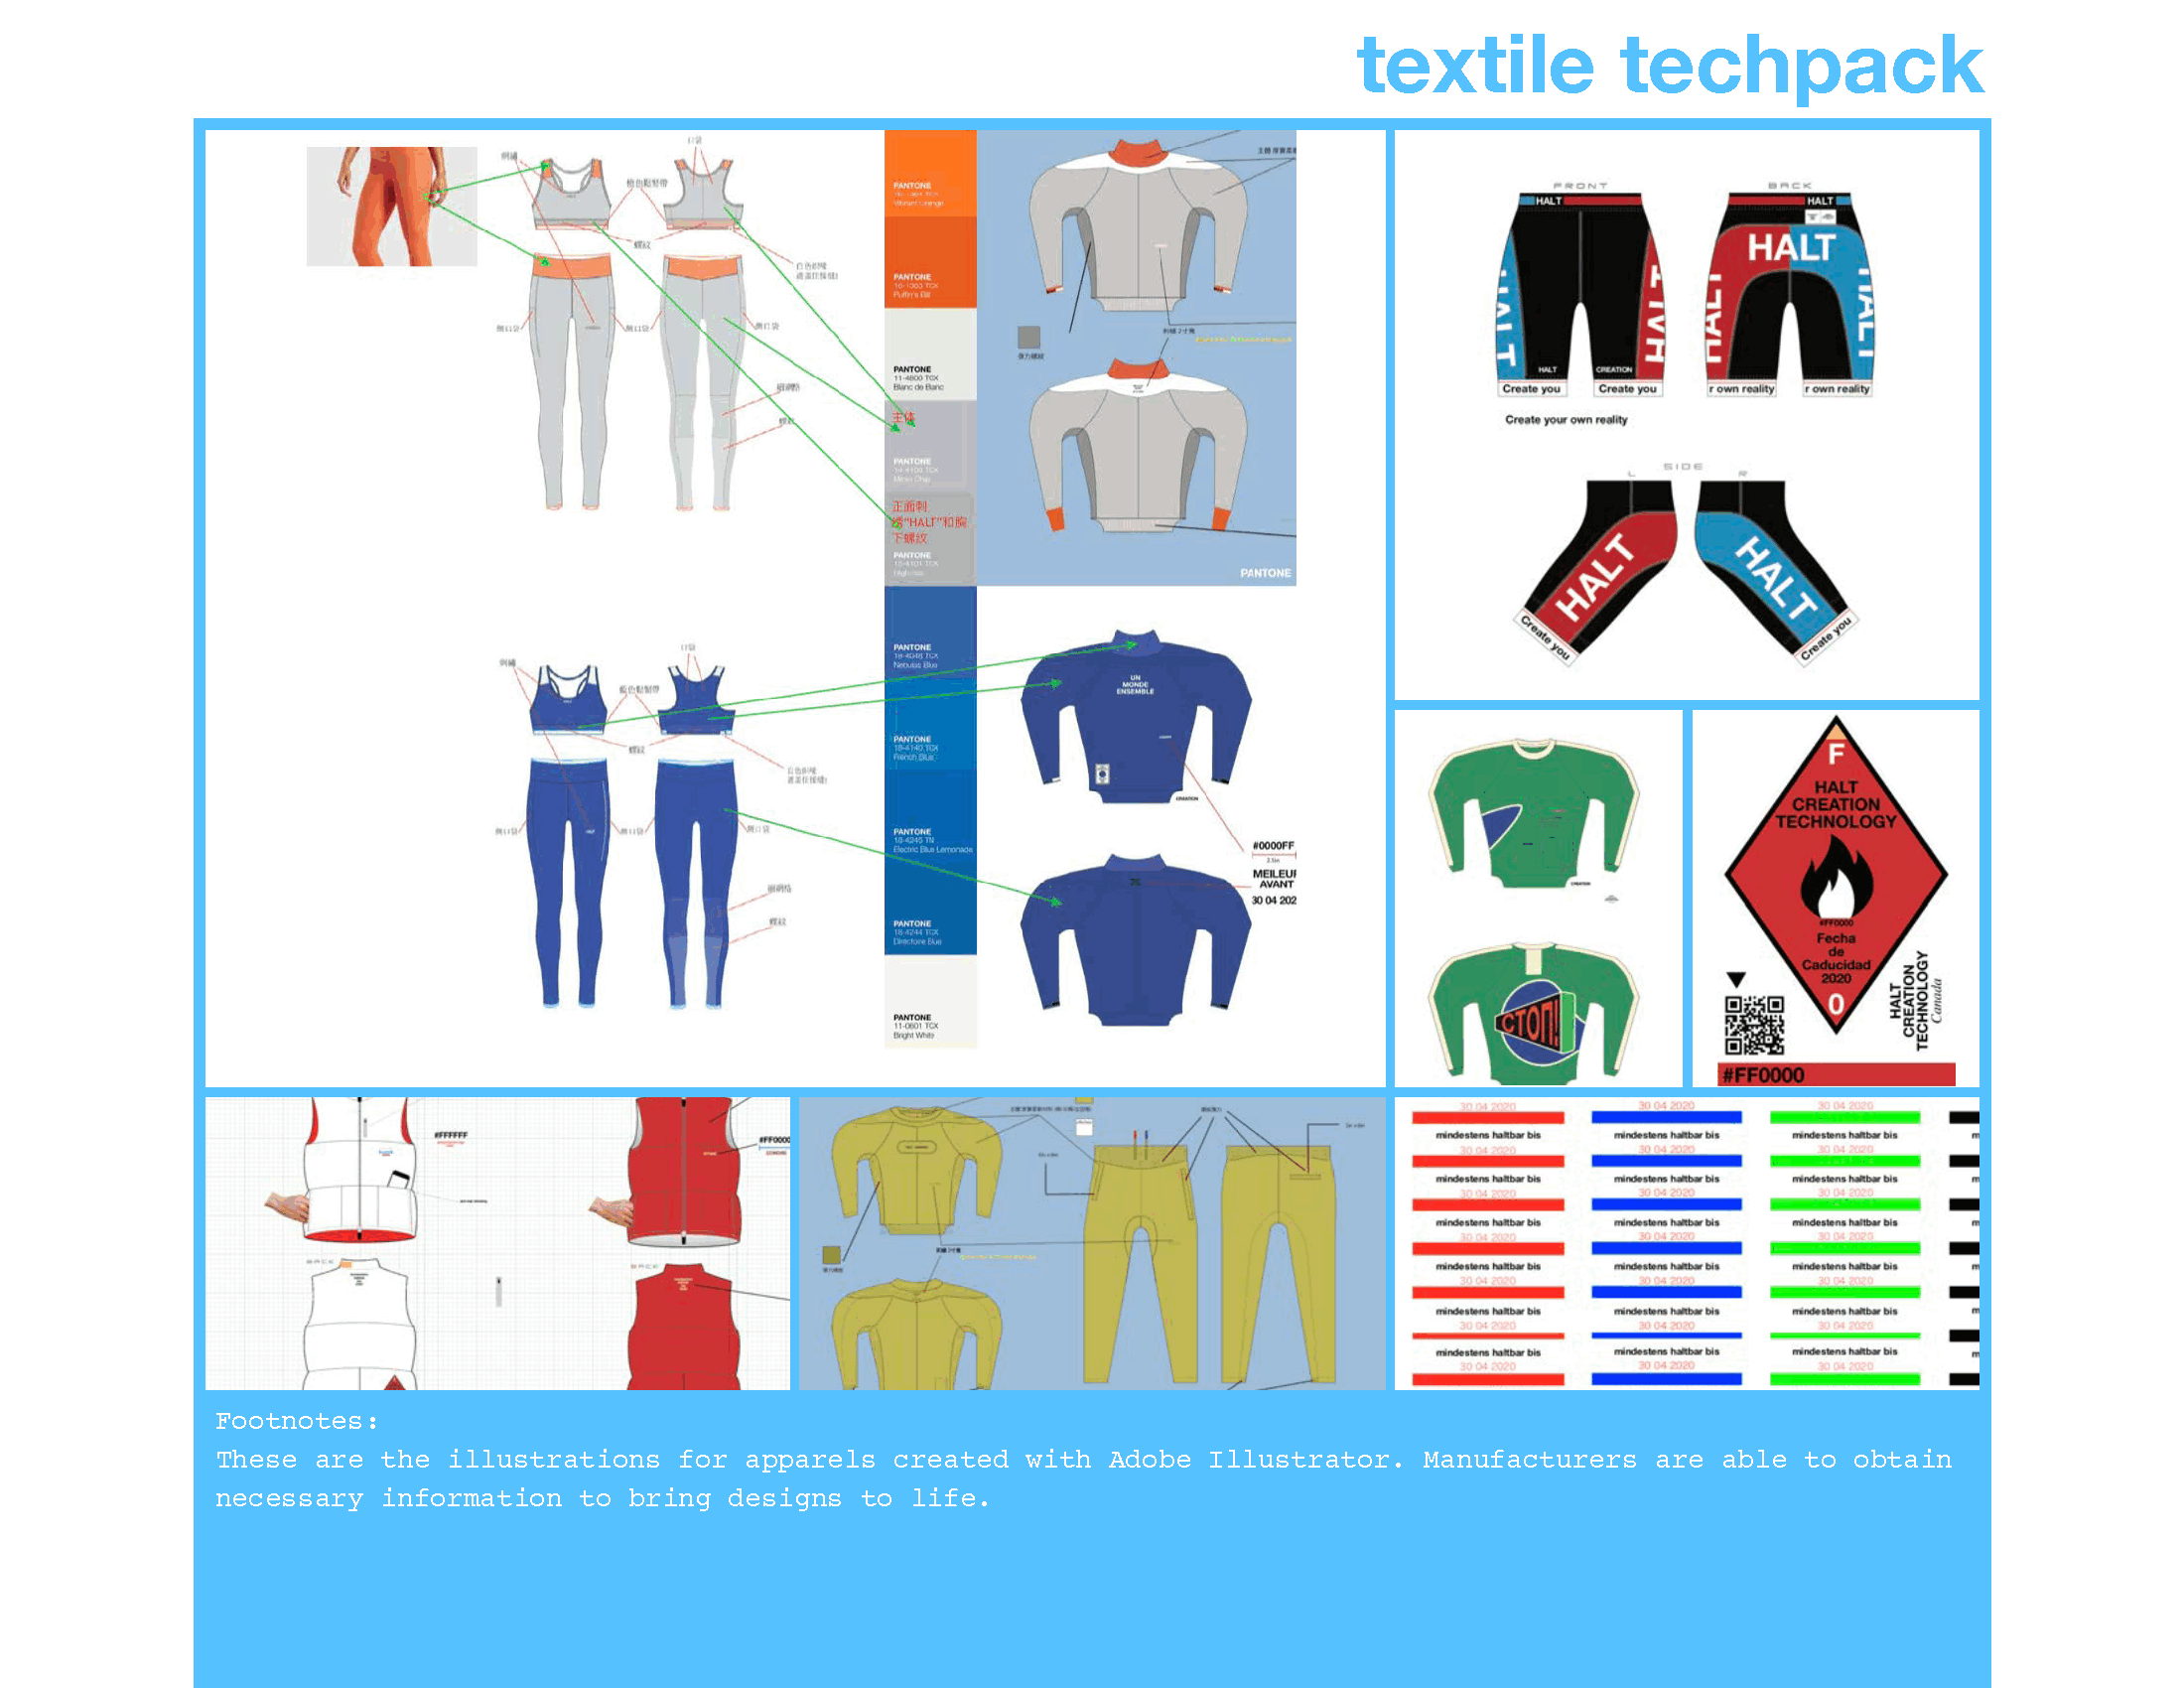 textile-techpack-archive-halt-creation